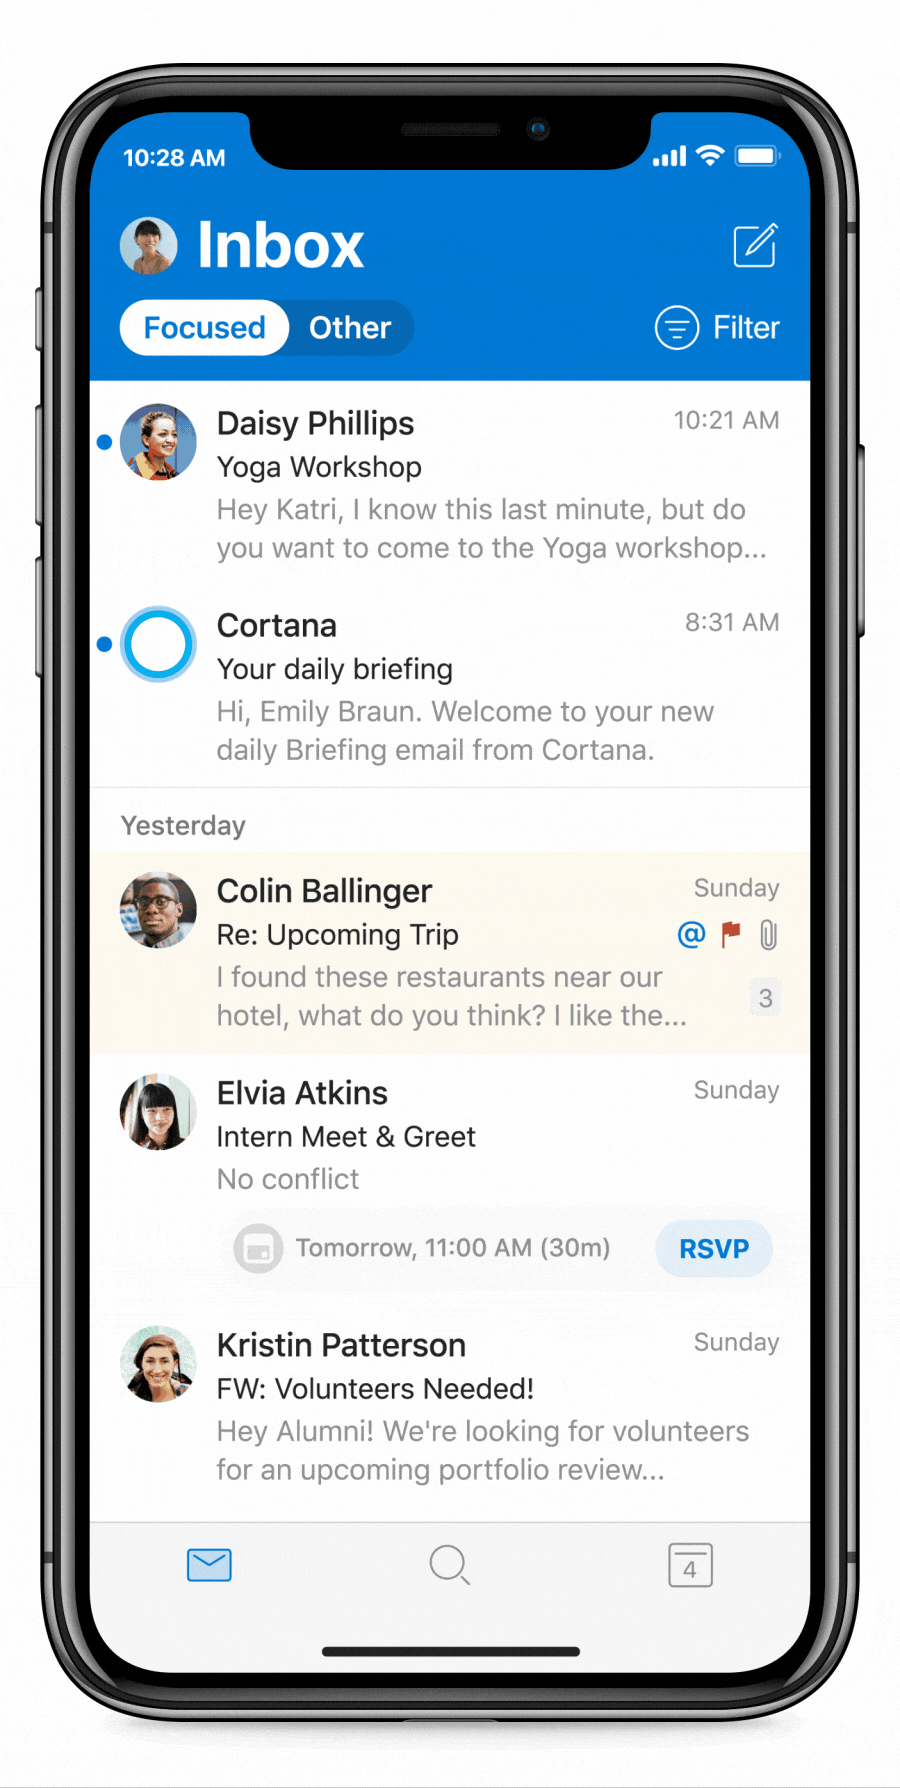 Imagen animada de Cortana Daily Briefings en Outlook Mobile. El usuario abre un resumen diario, marca como completado un reporte de calidad, una tarea completada, y agenda tiempo de concentración después de revisar su calendario.